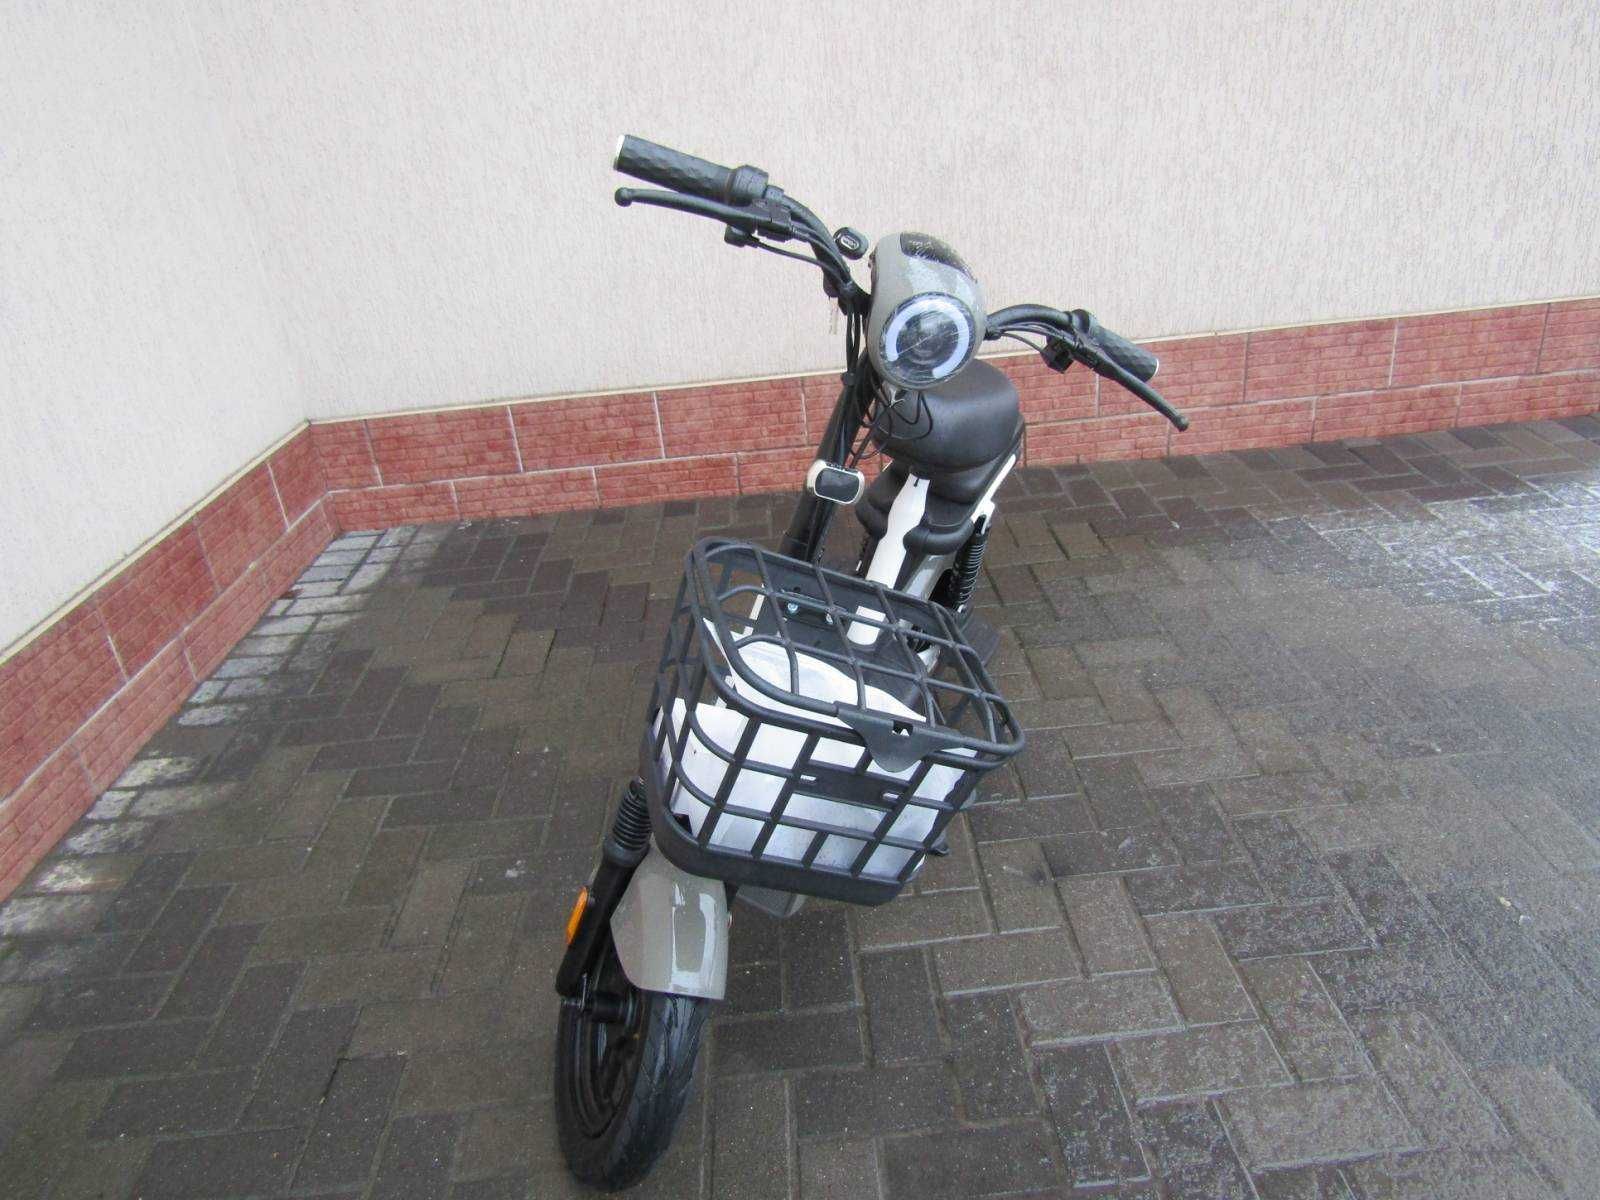 Електровелосипед FADA LiDO 350ват